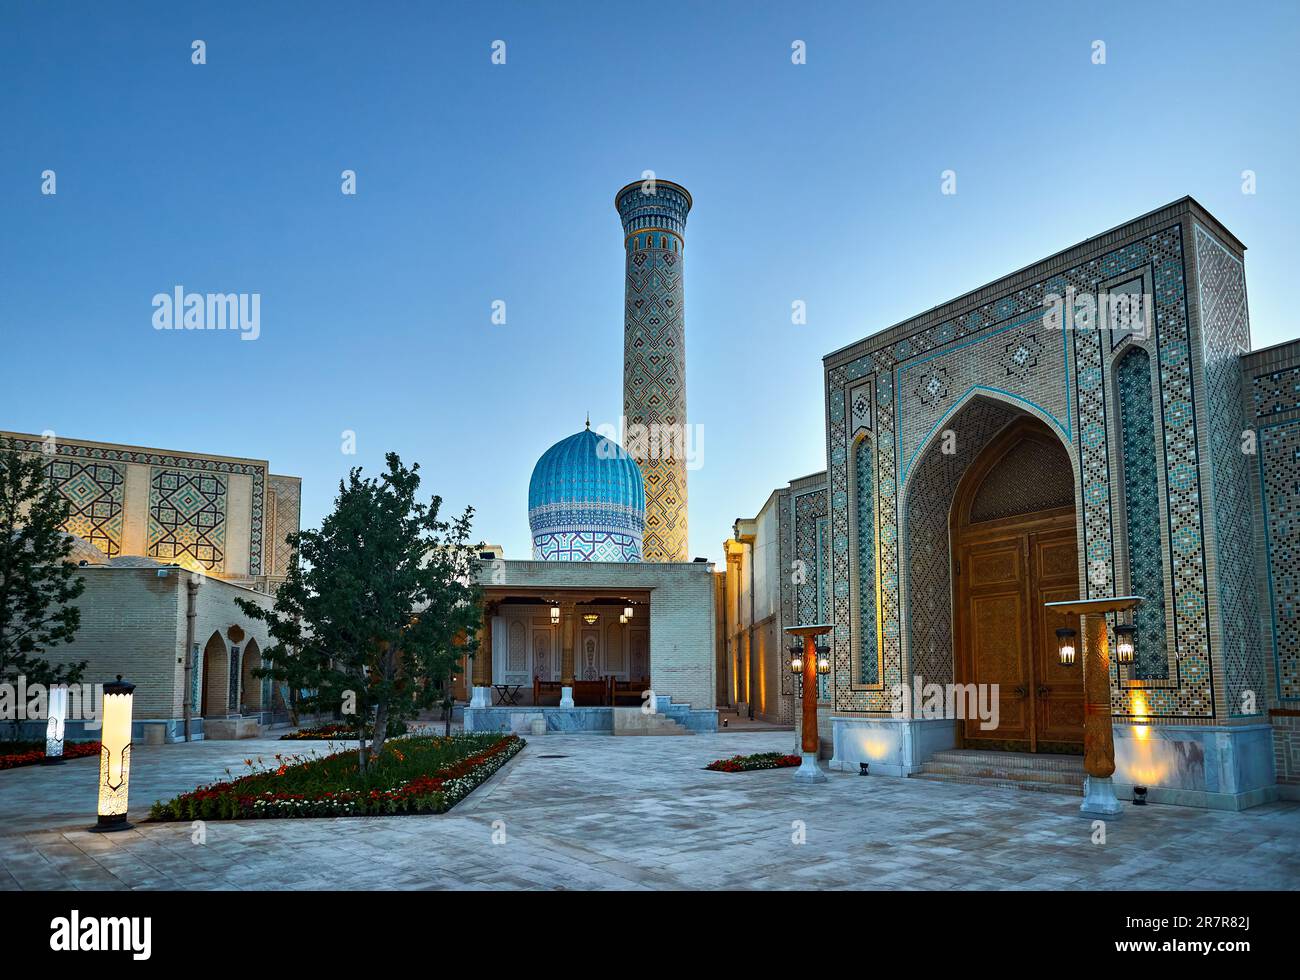 Samarcanda Città Eterna Boqiy Shahar Registan piazza pubblica con moschea e minareto moderno complesso della città antica in Uzbekistan Foto Stock